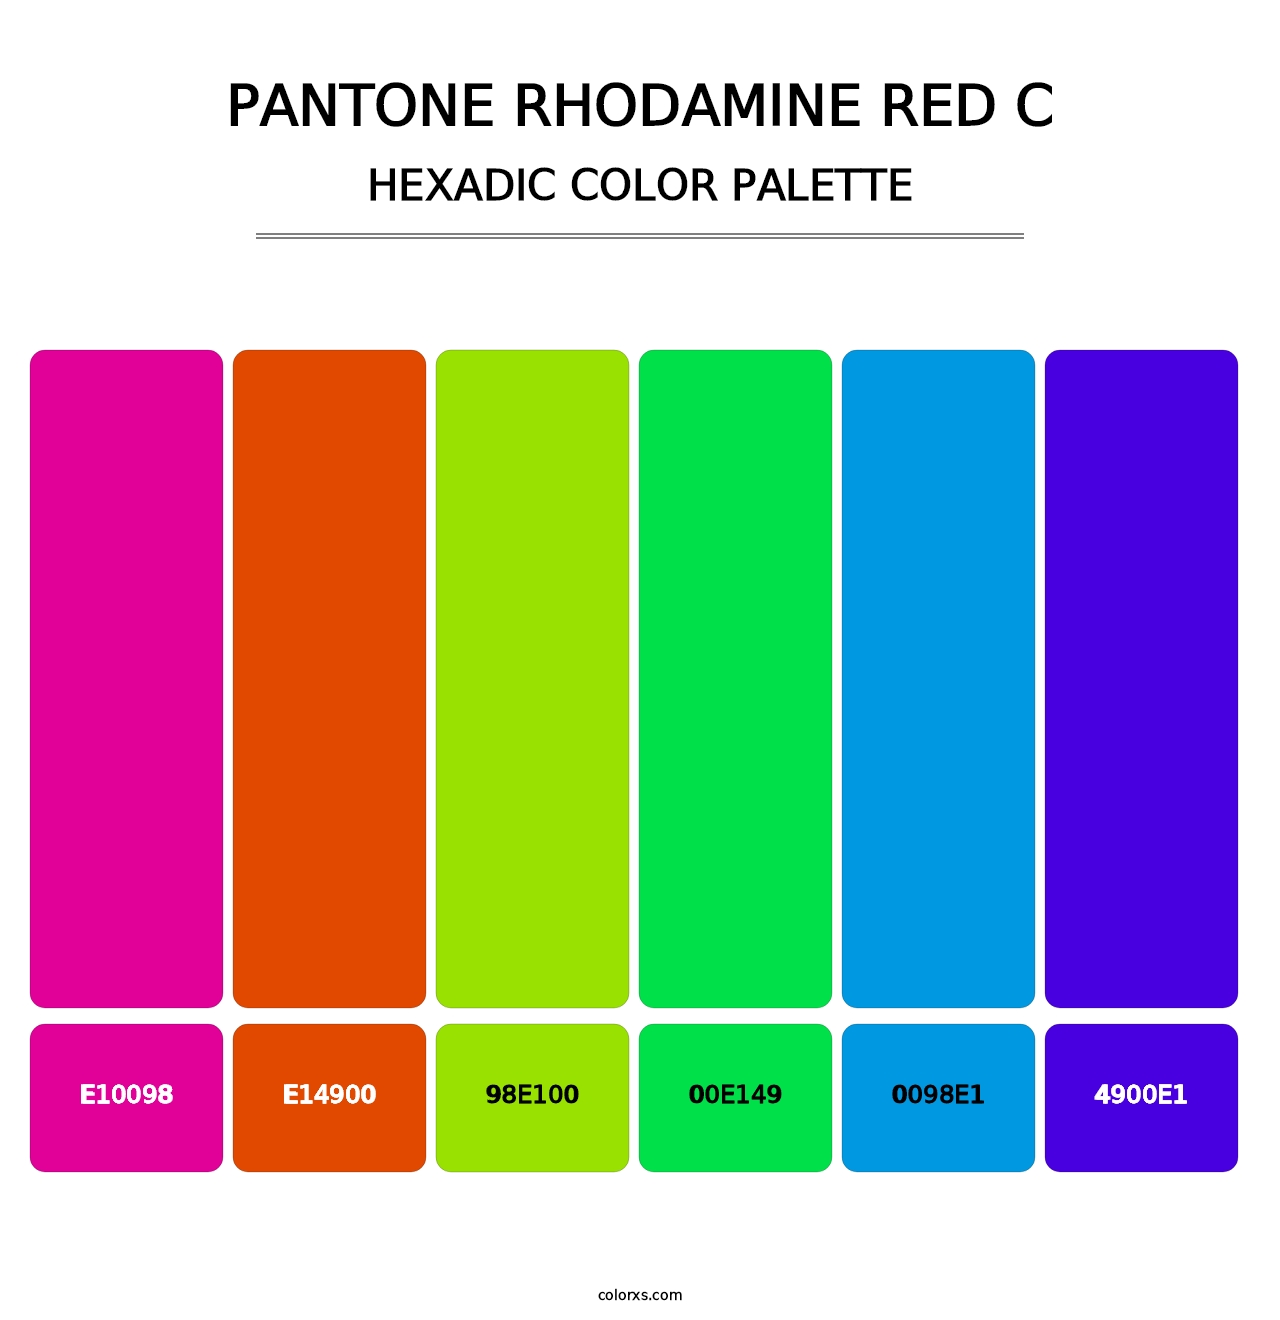 PANTONE Rhodamine Red C - Hexadic Color Palette